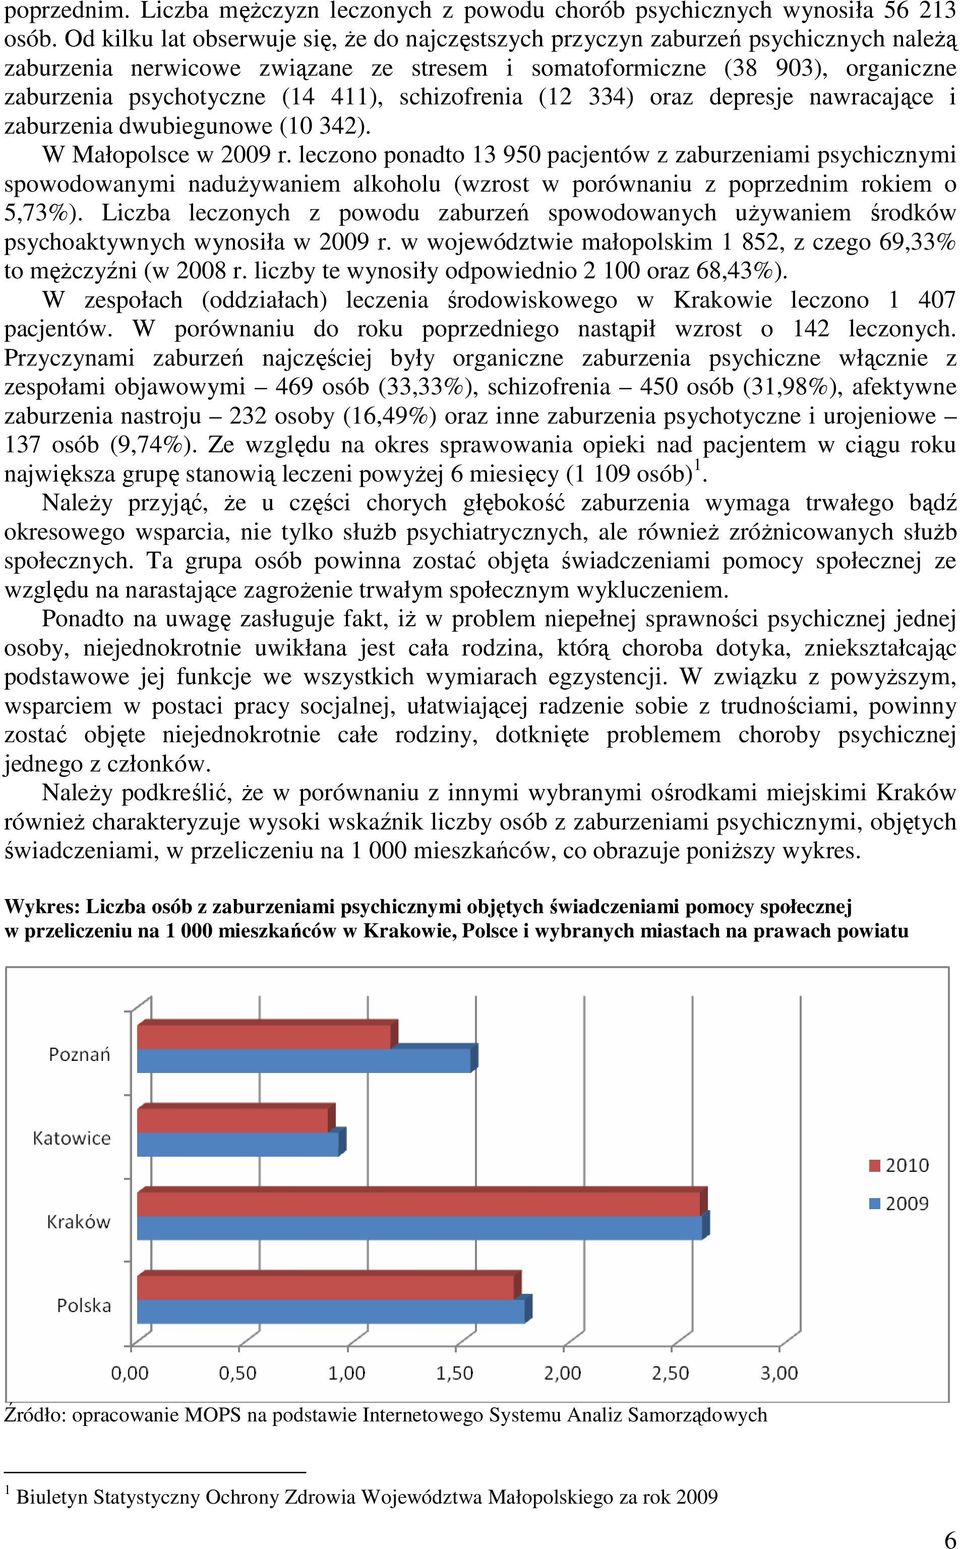 schizofrenia (12 334) oraz depresje nawracające i zaburzenia dwubiegunowe (10 342). W Małopolsce w 2009 r.